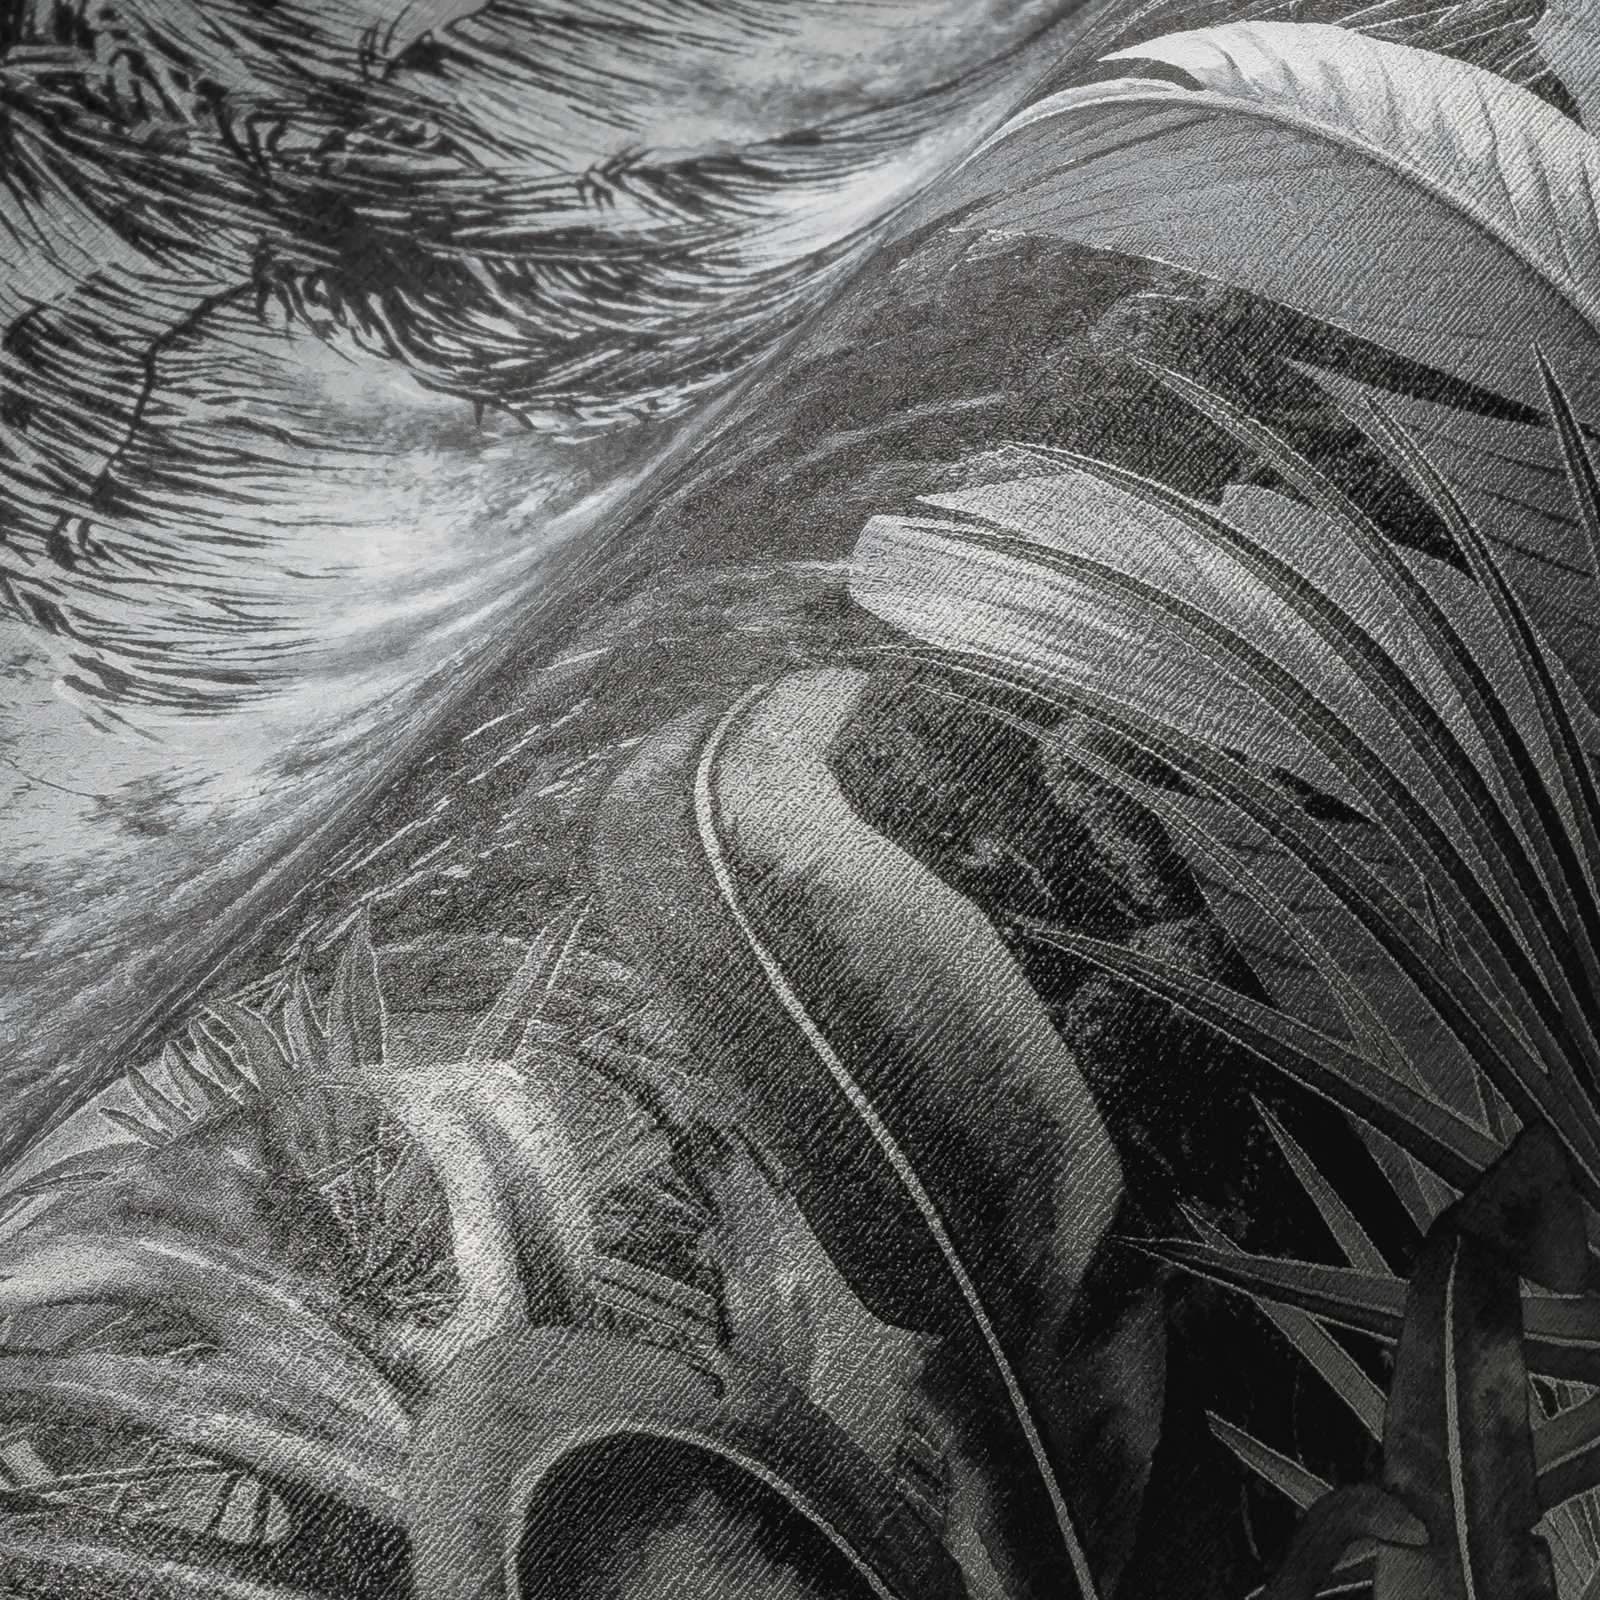             Papel pintado blanco y negro con motivos de la selva y palmeras
        